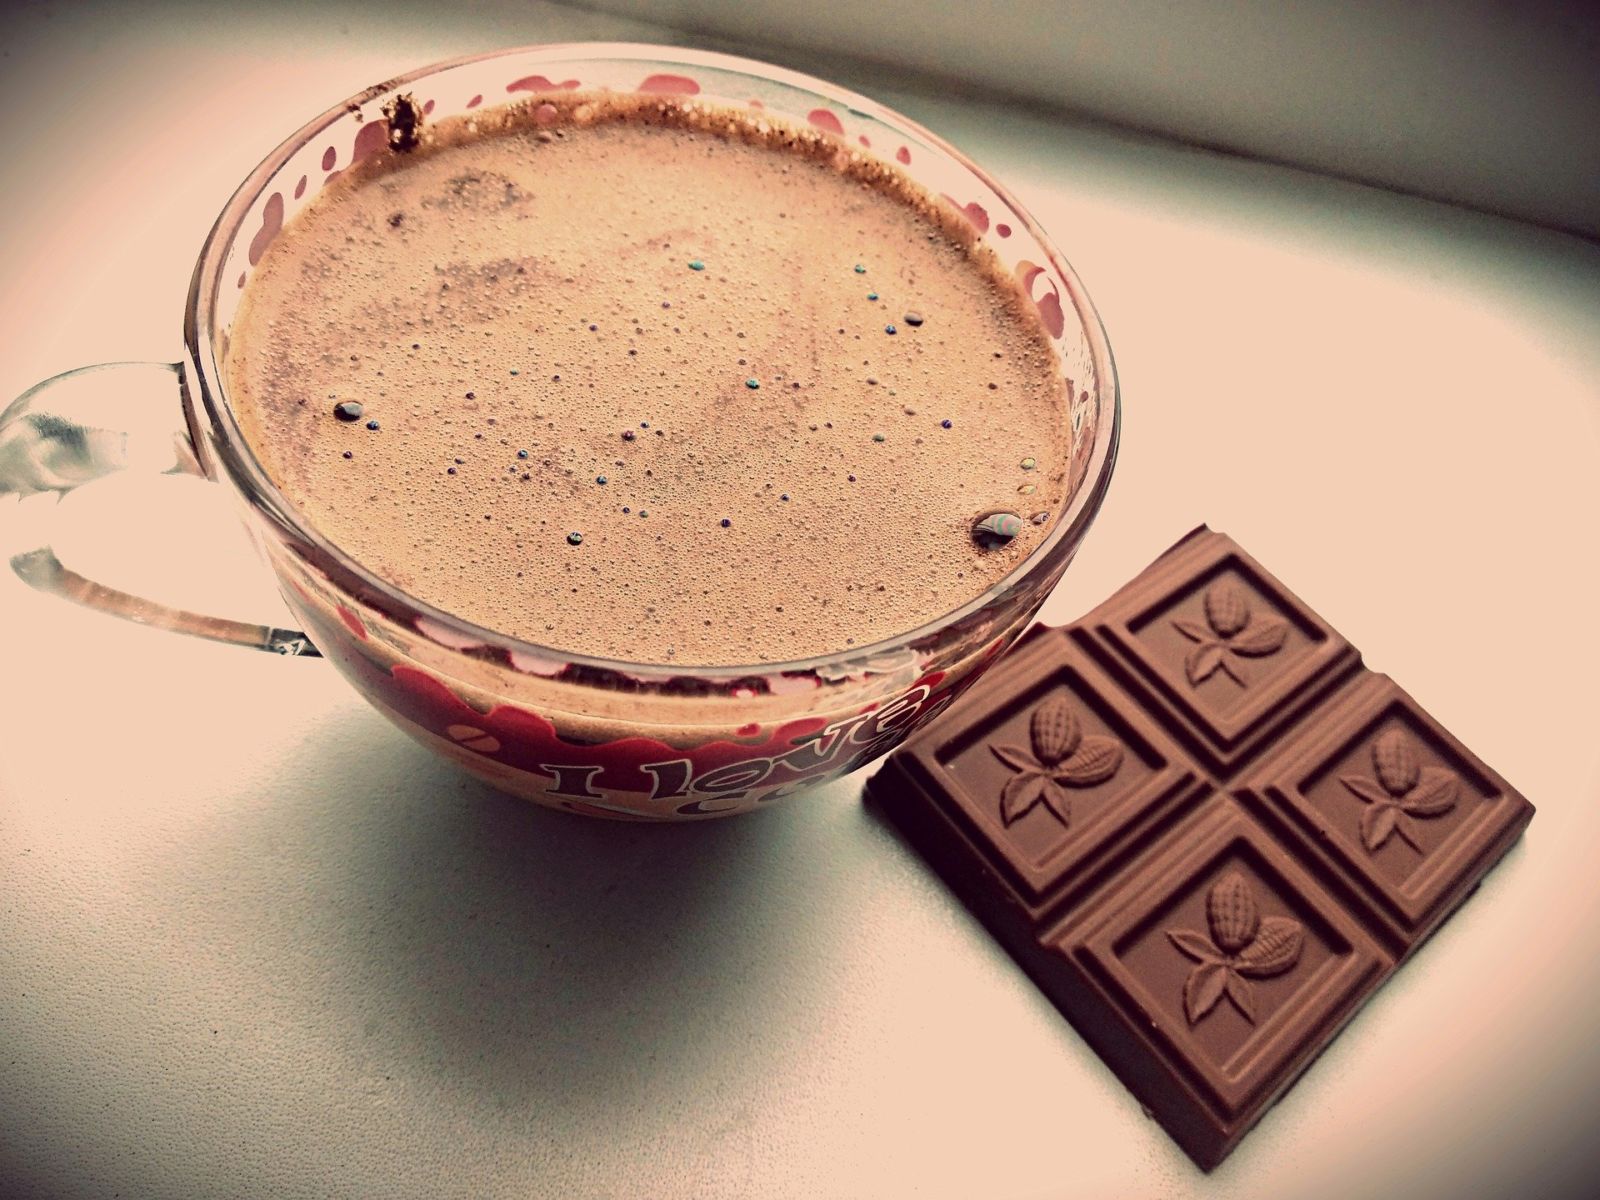 Afslanken zonder dieet, tip van de week 21: Chocola